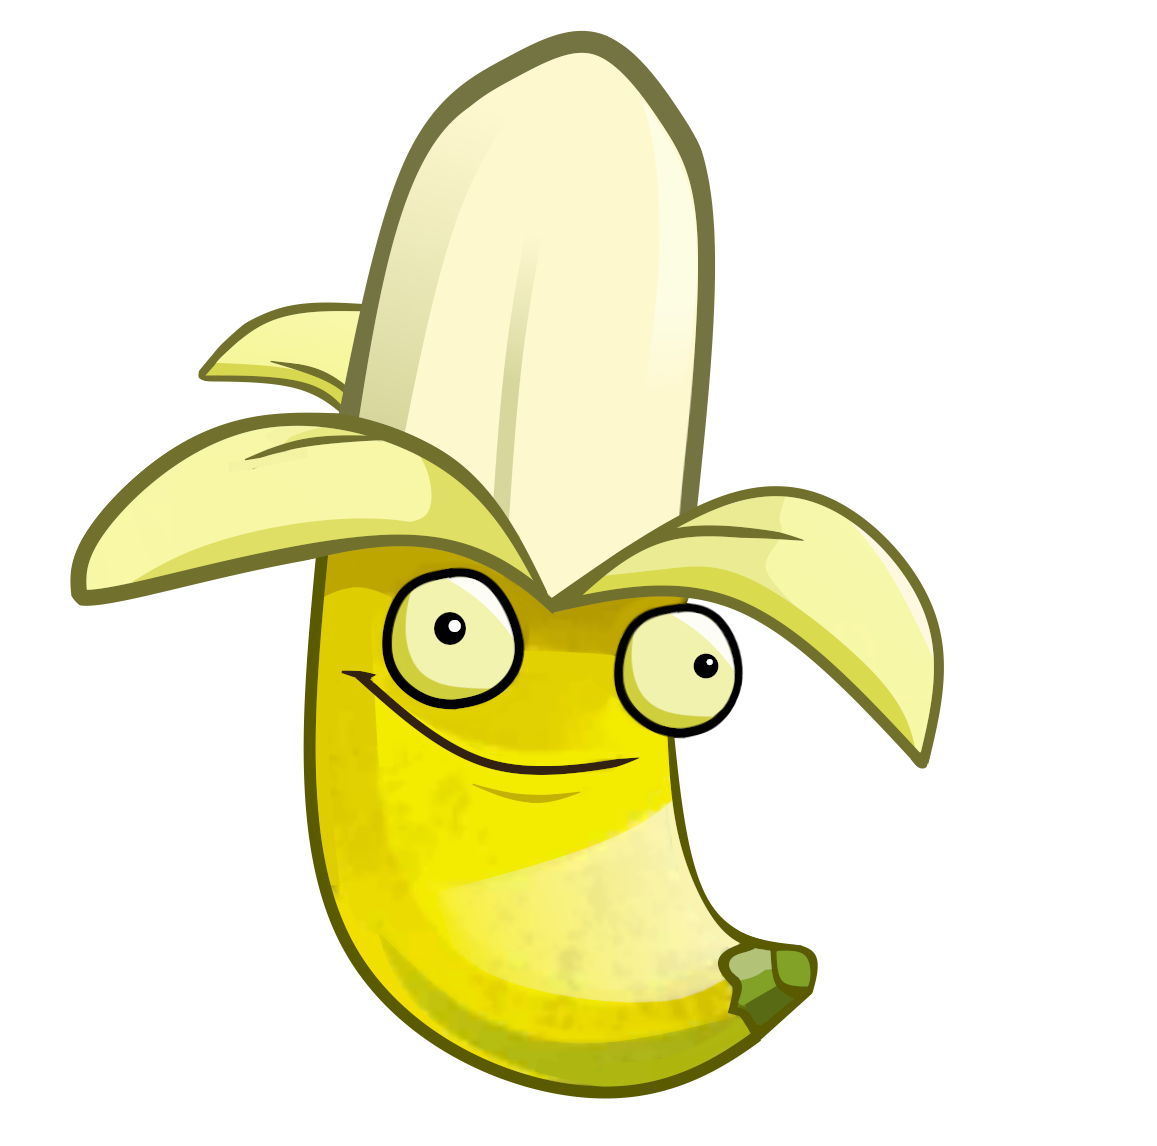 Clipart banana 2 banana. Image launcher pvzh png